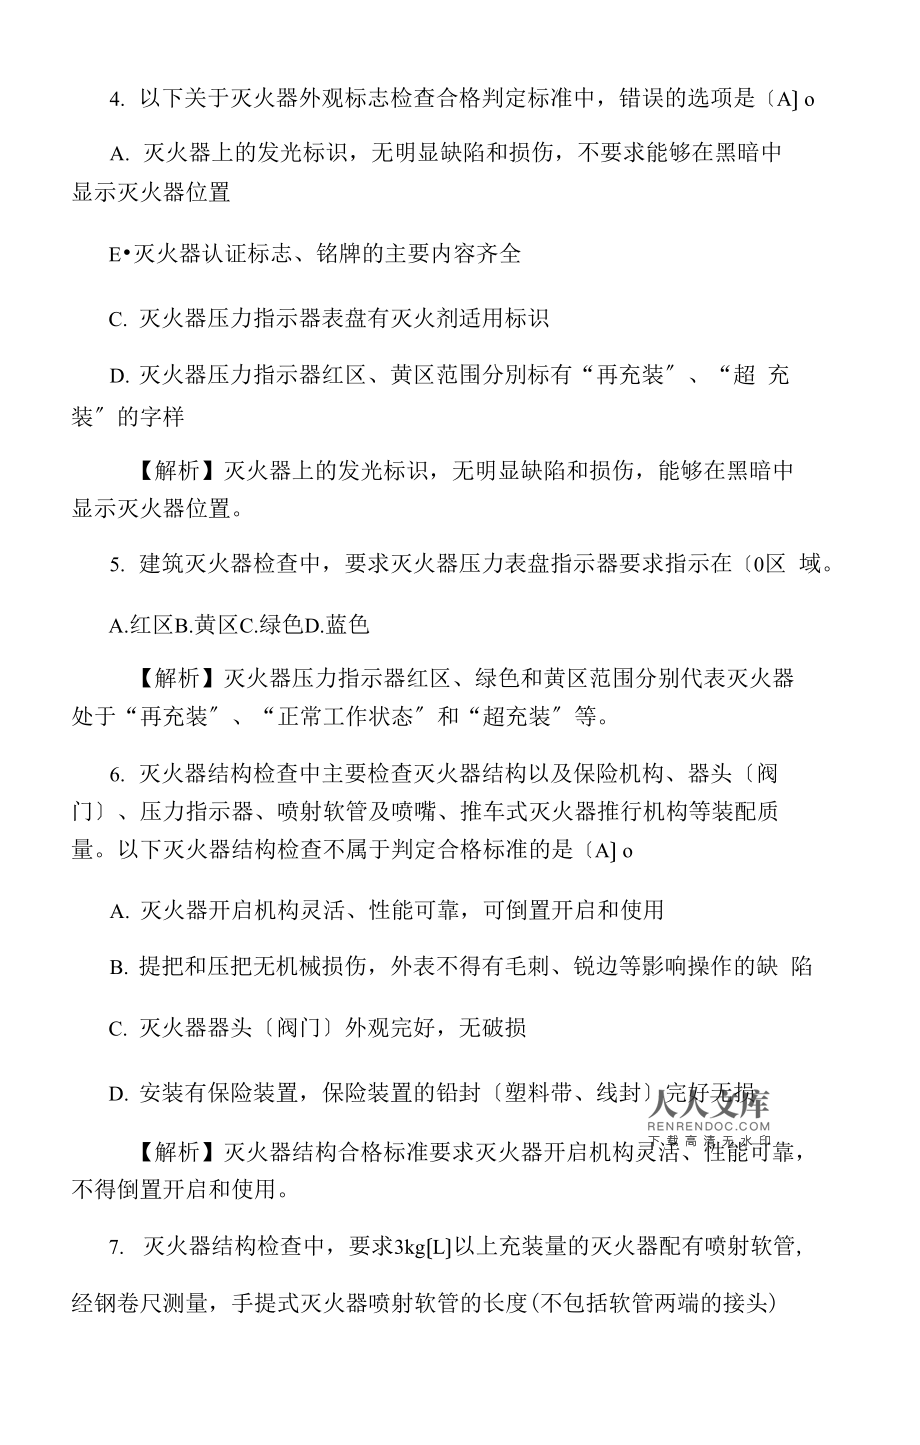 黑龙江一级消防工程师考试,黑龙江一级消防工程师考试取消了吗  第1张